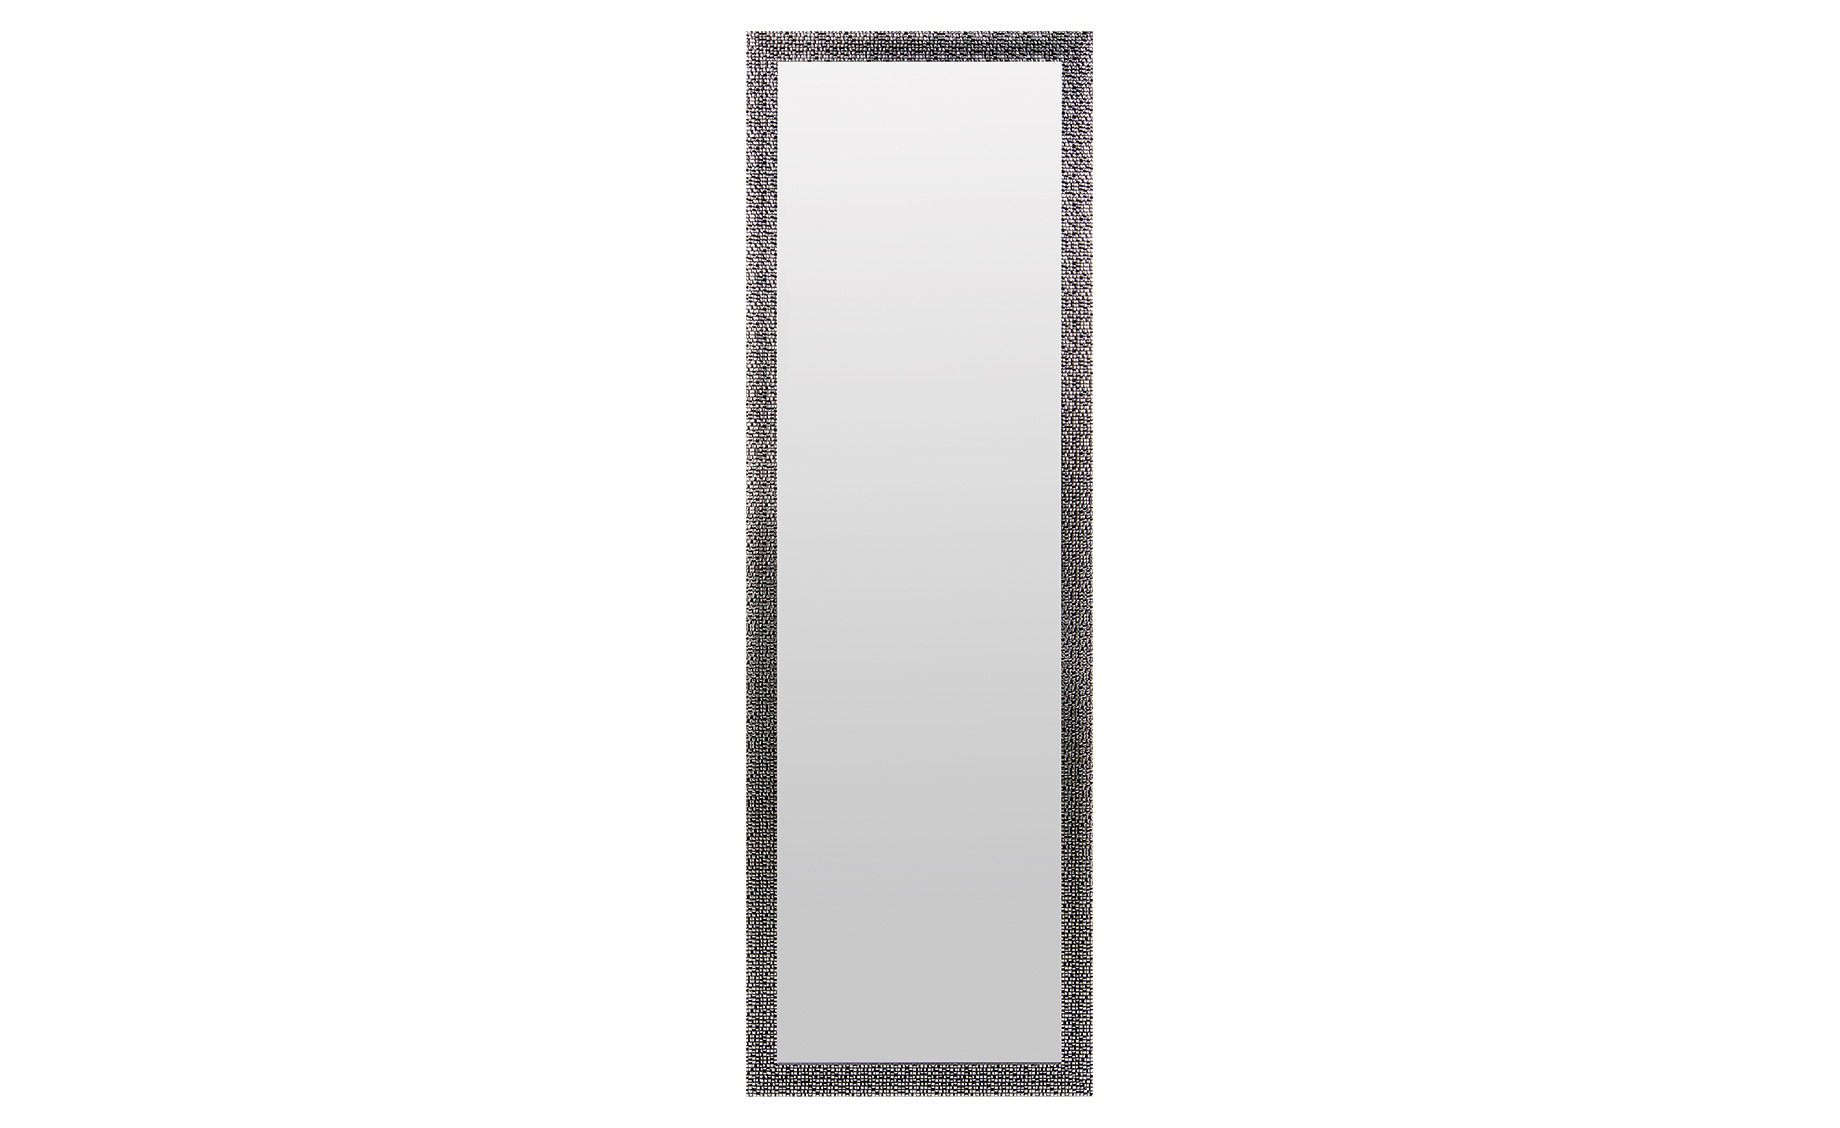 Zidno ogledalo Madison crno 49,2x149,2cm